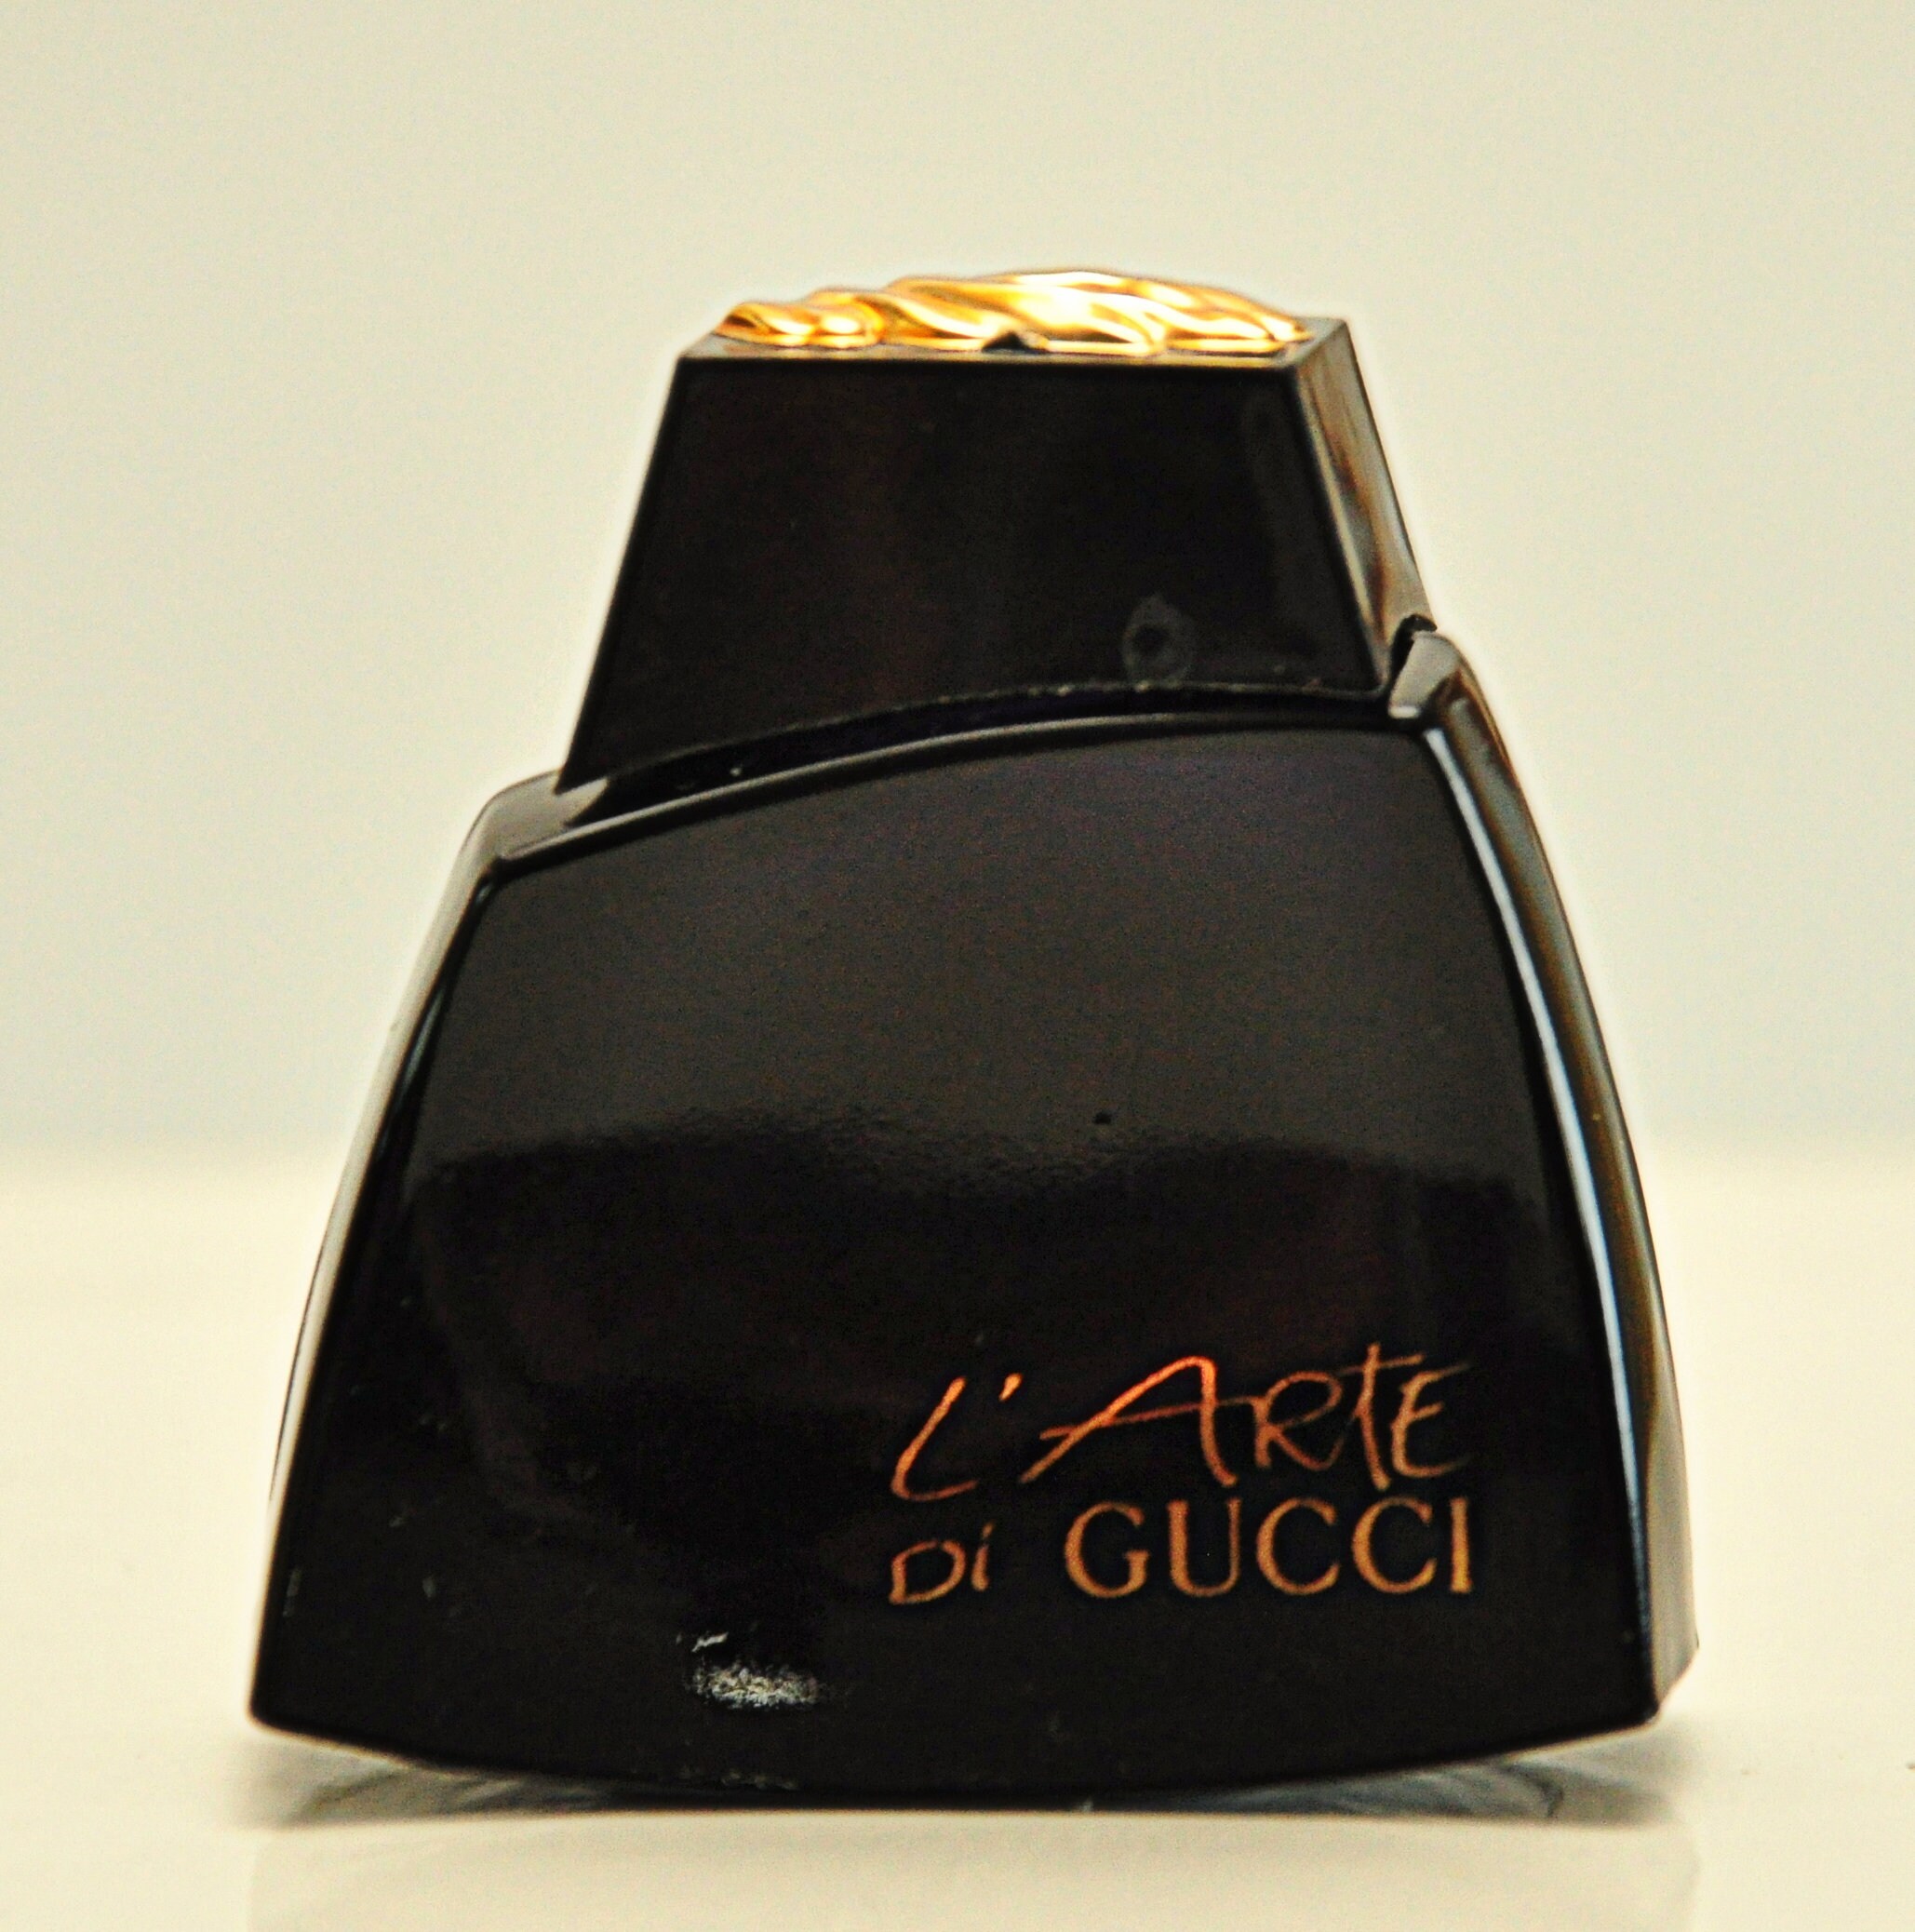 Kedelig vinde plantageejer Gucci L'arte Di Gucci Eau De Parfum Edp 5ml 0,17 Fl. Oz. Miniature Splash  Not Spray Perfume Woman Rare Vintage 1991 - Etsy UK